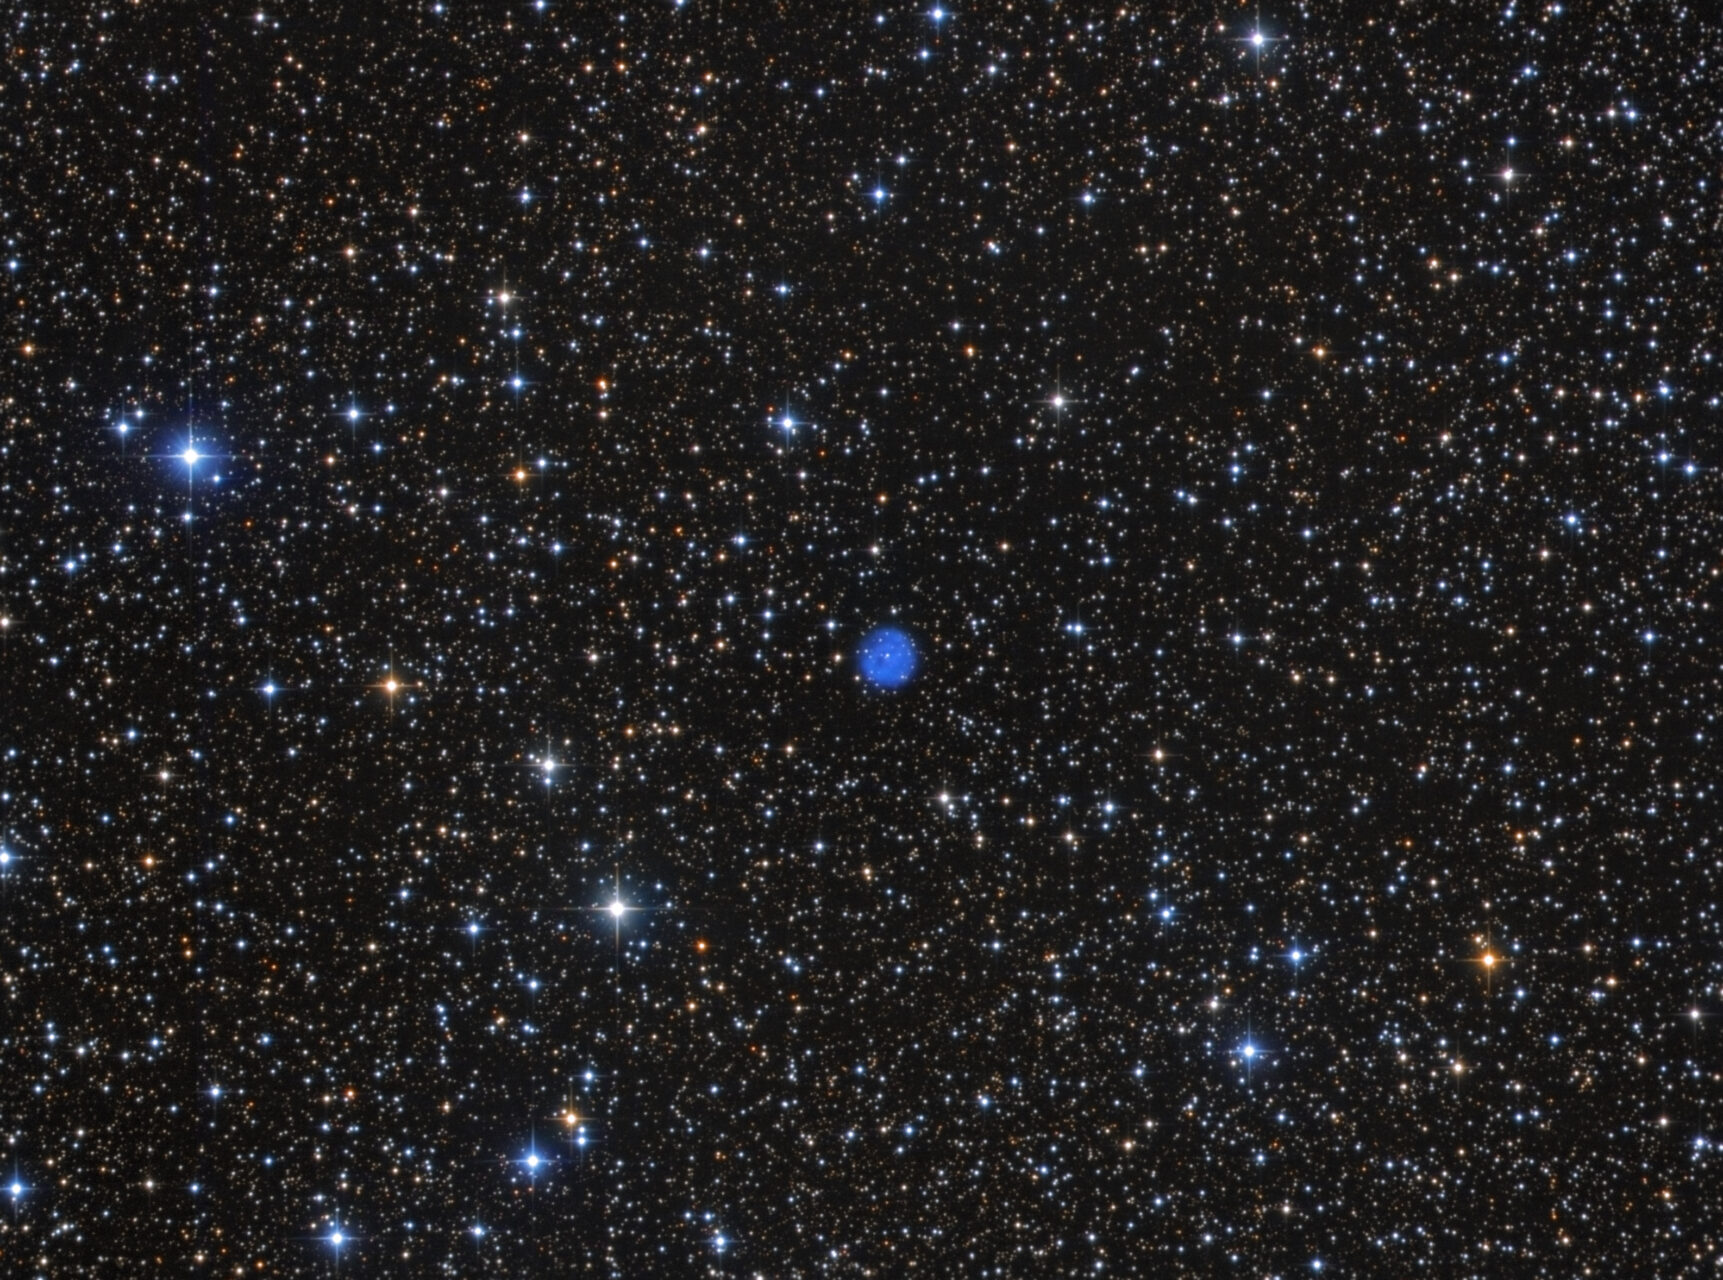 NGC 6842